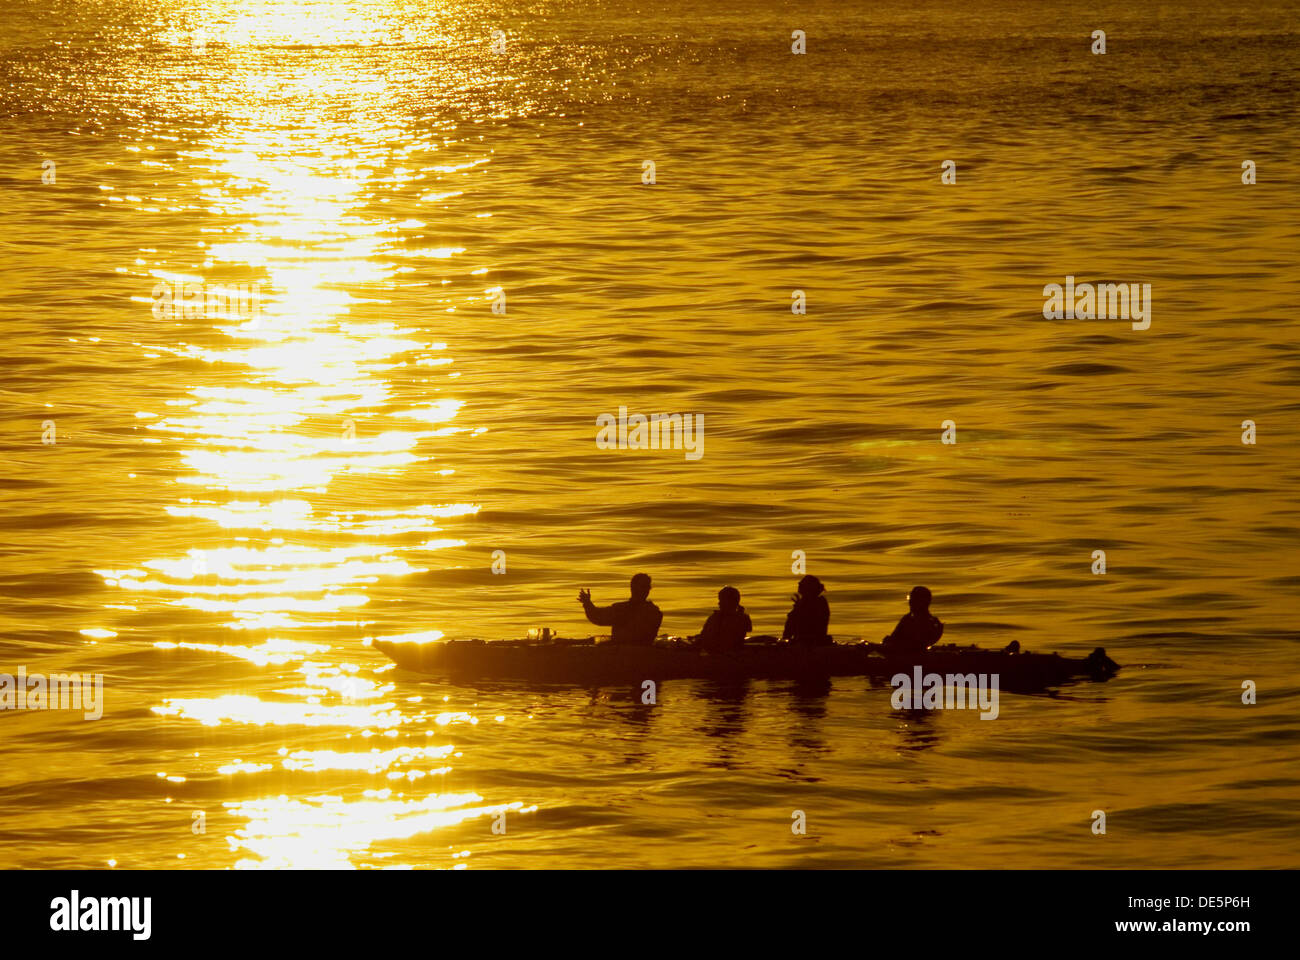 Kayakers silhouette, fornace da calce Pt parco dello stato di Washington, Stati Uniti d'America Foto Stock